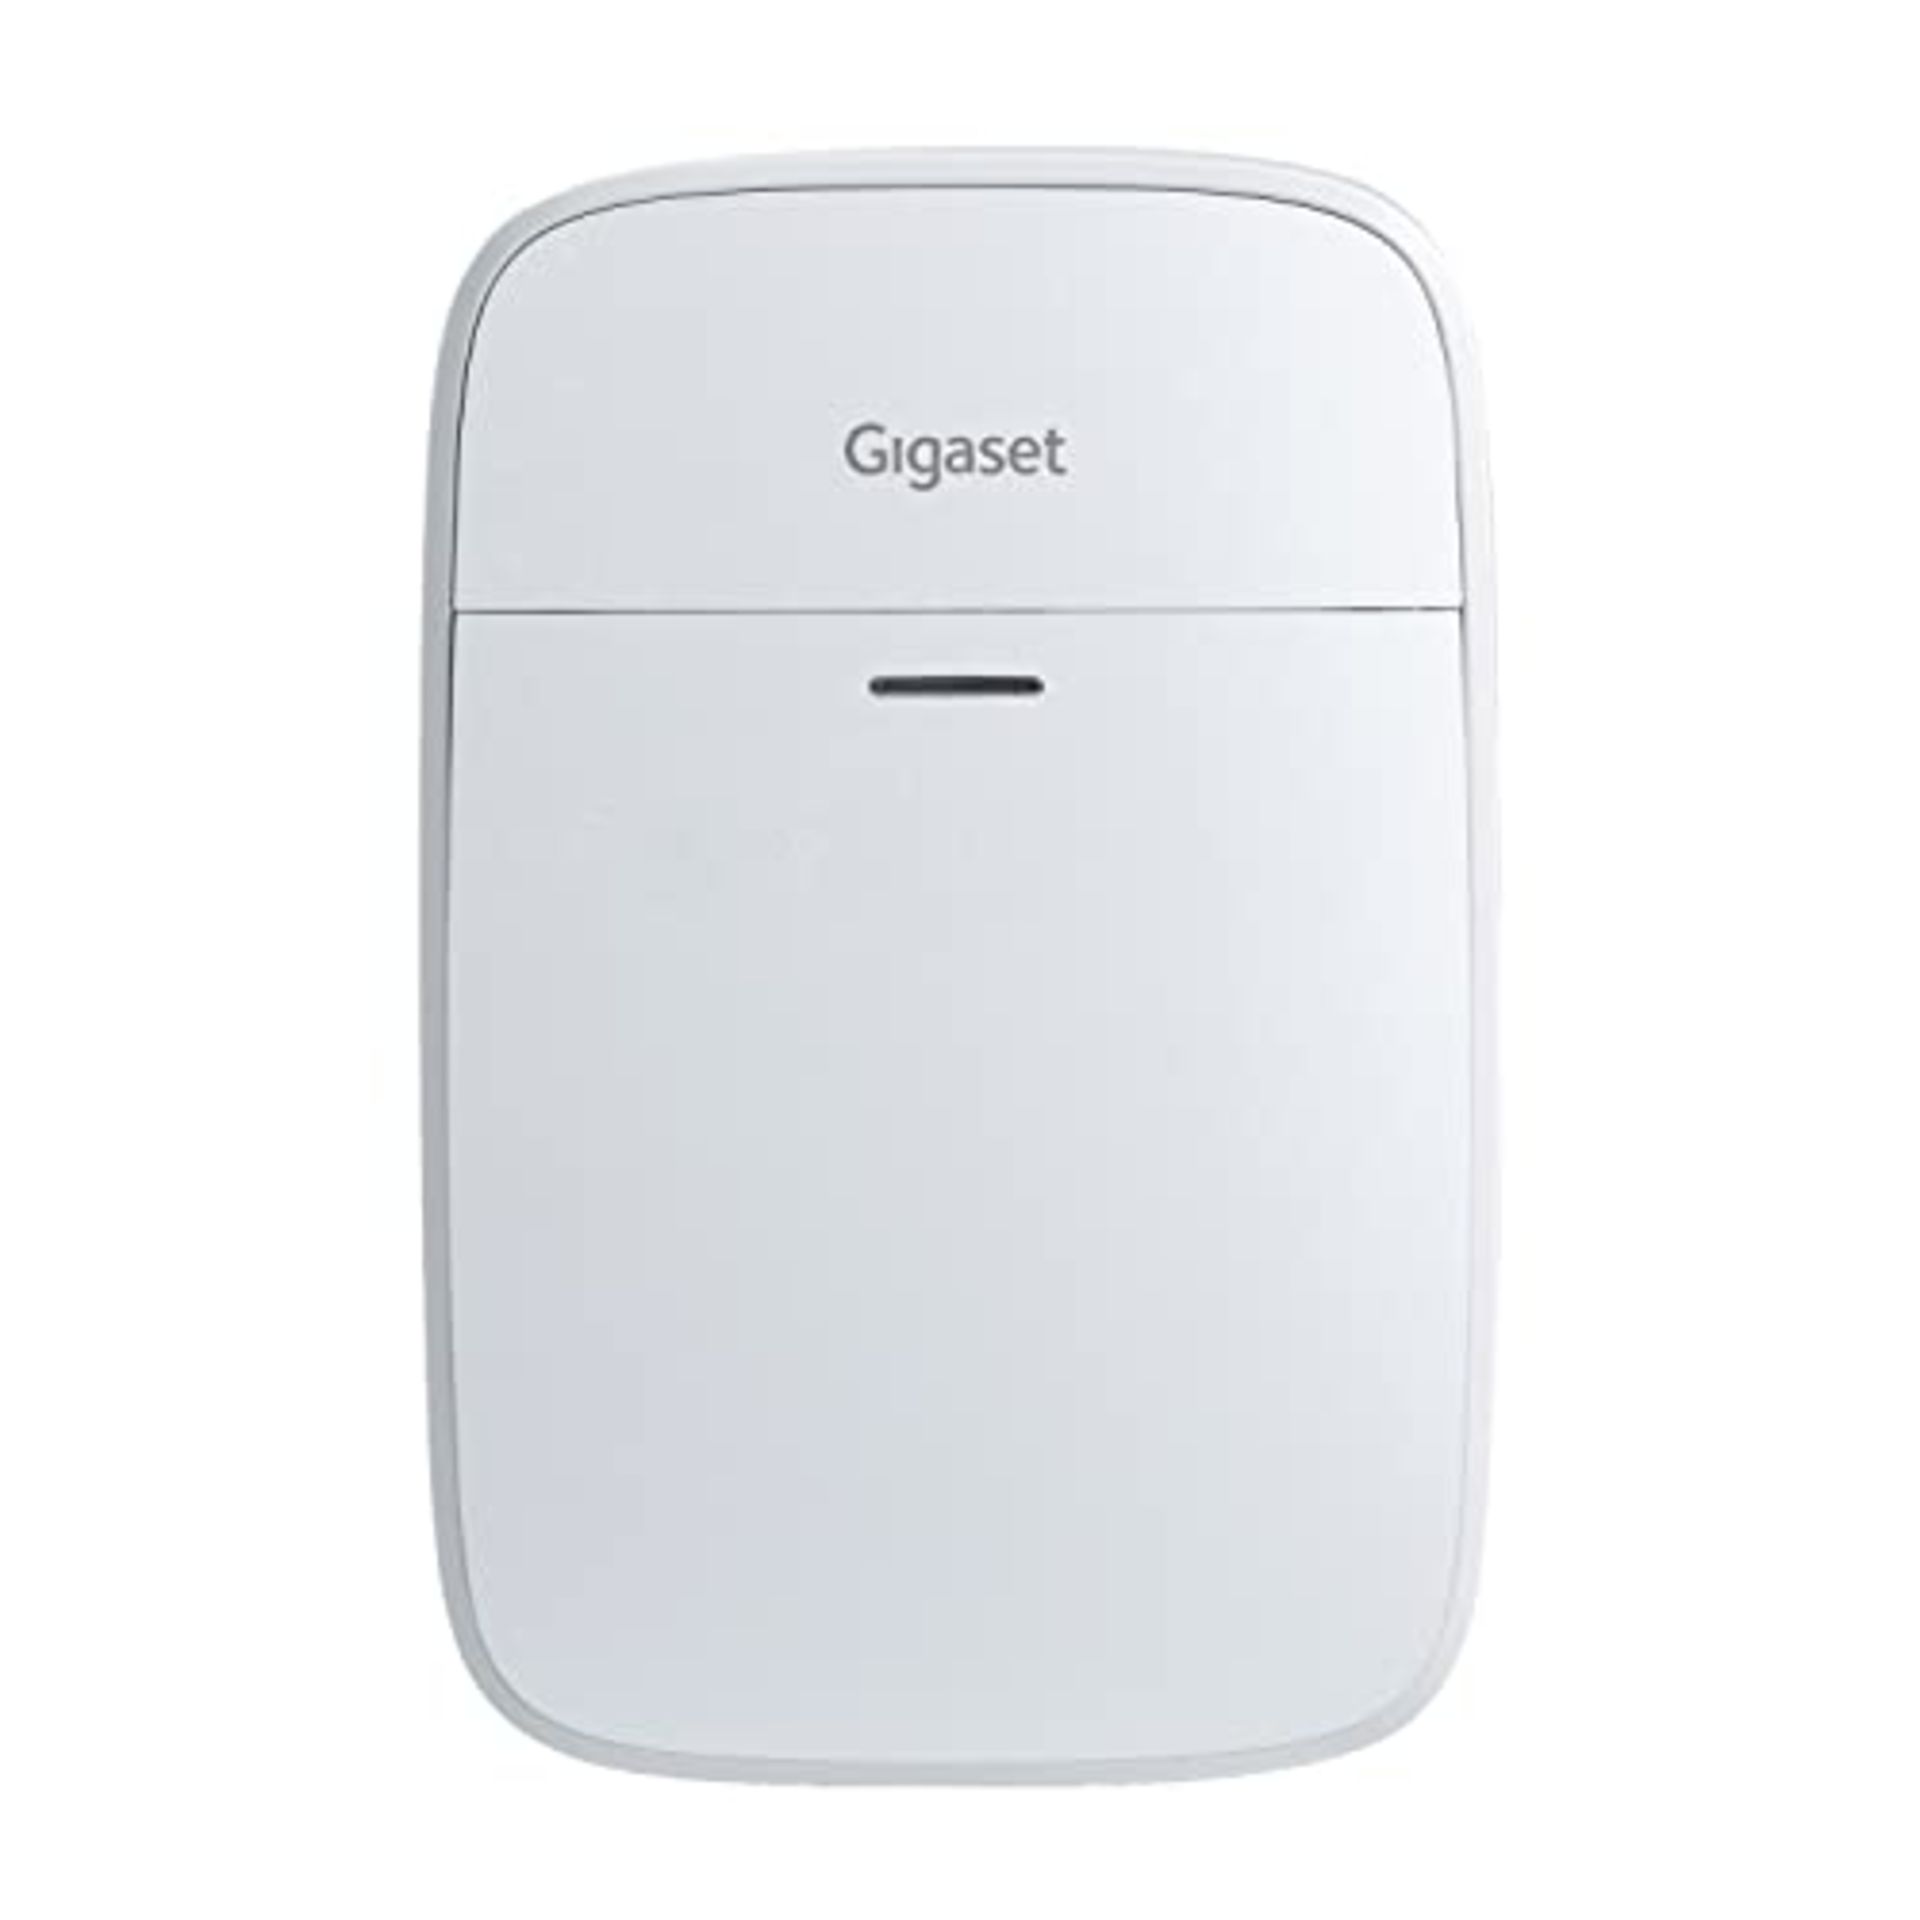 Gigaset Motion One X Sensor - Smart Home Set Addition - Motion Sensor For Larger Houses & Apartme...